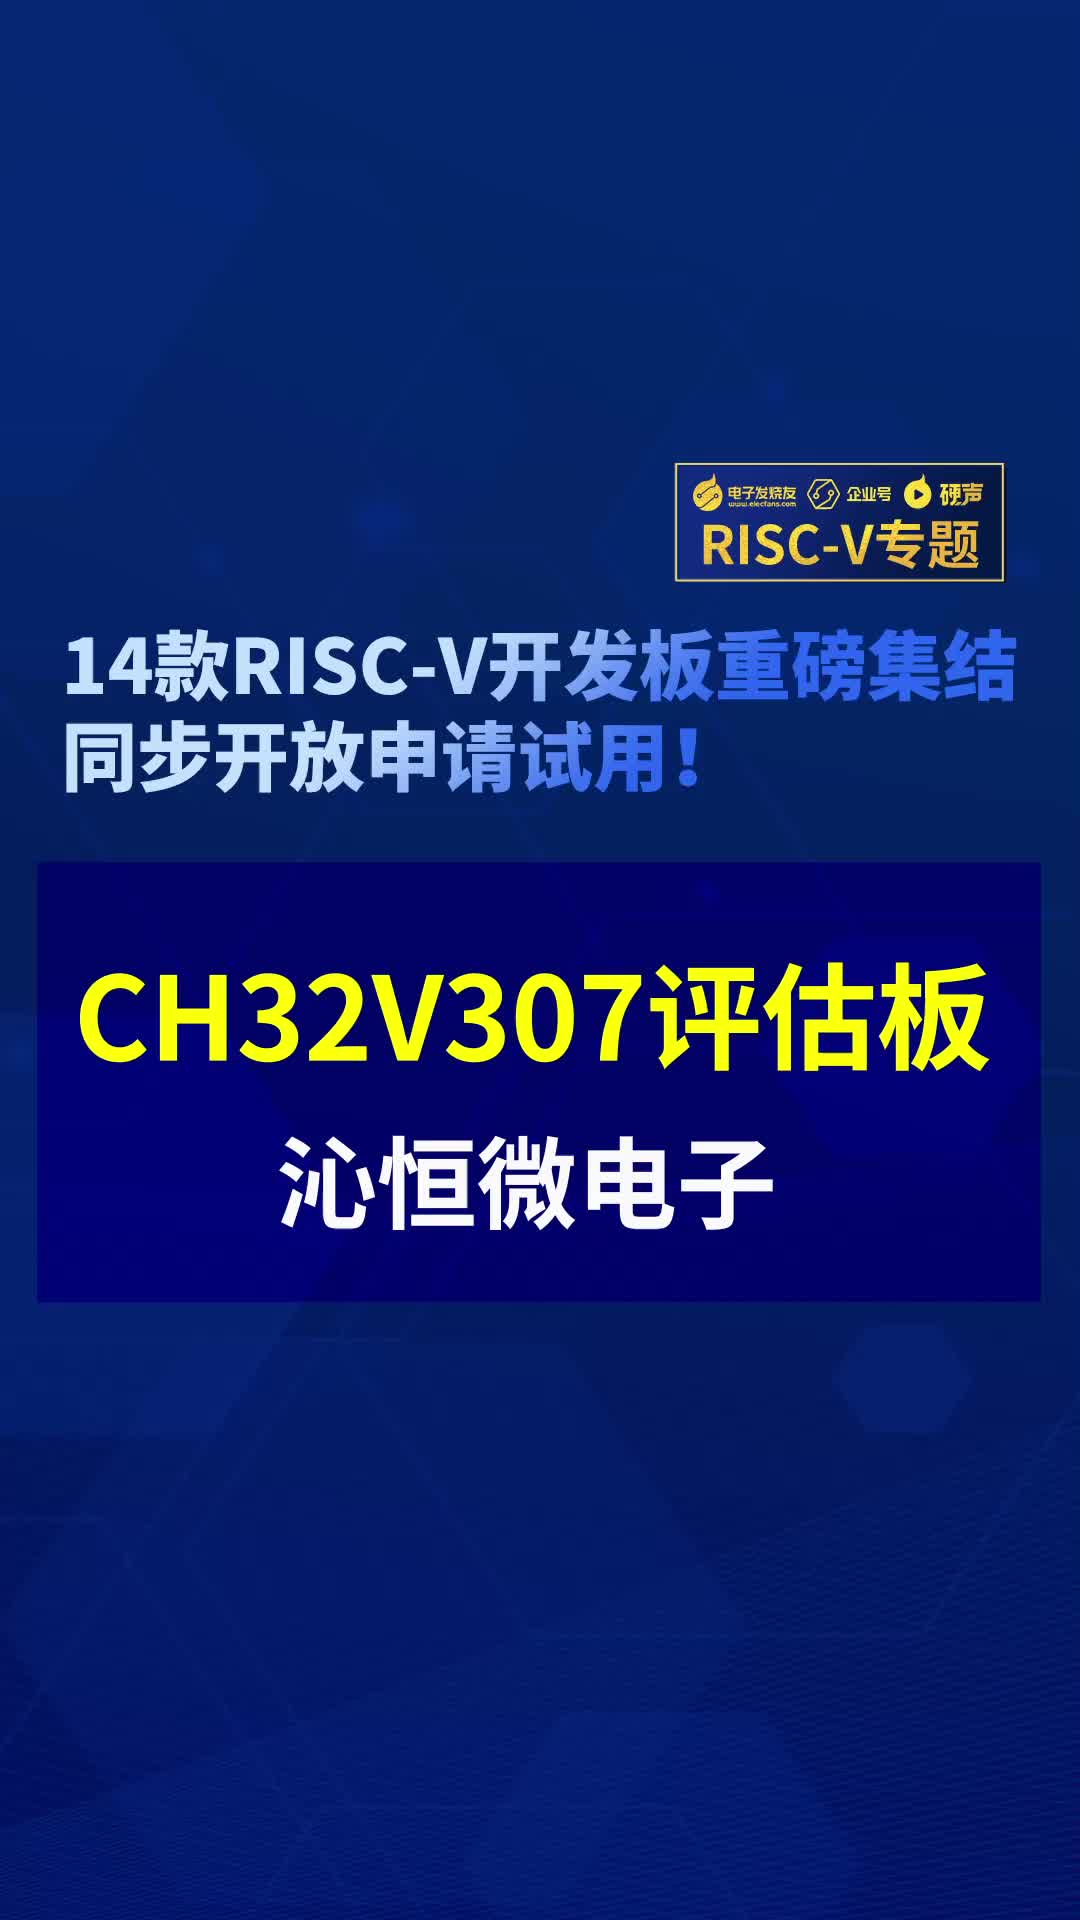 【RISC-V專題】沁恒微CH32V307評估板免費試用#RISC-V開發板評測 